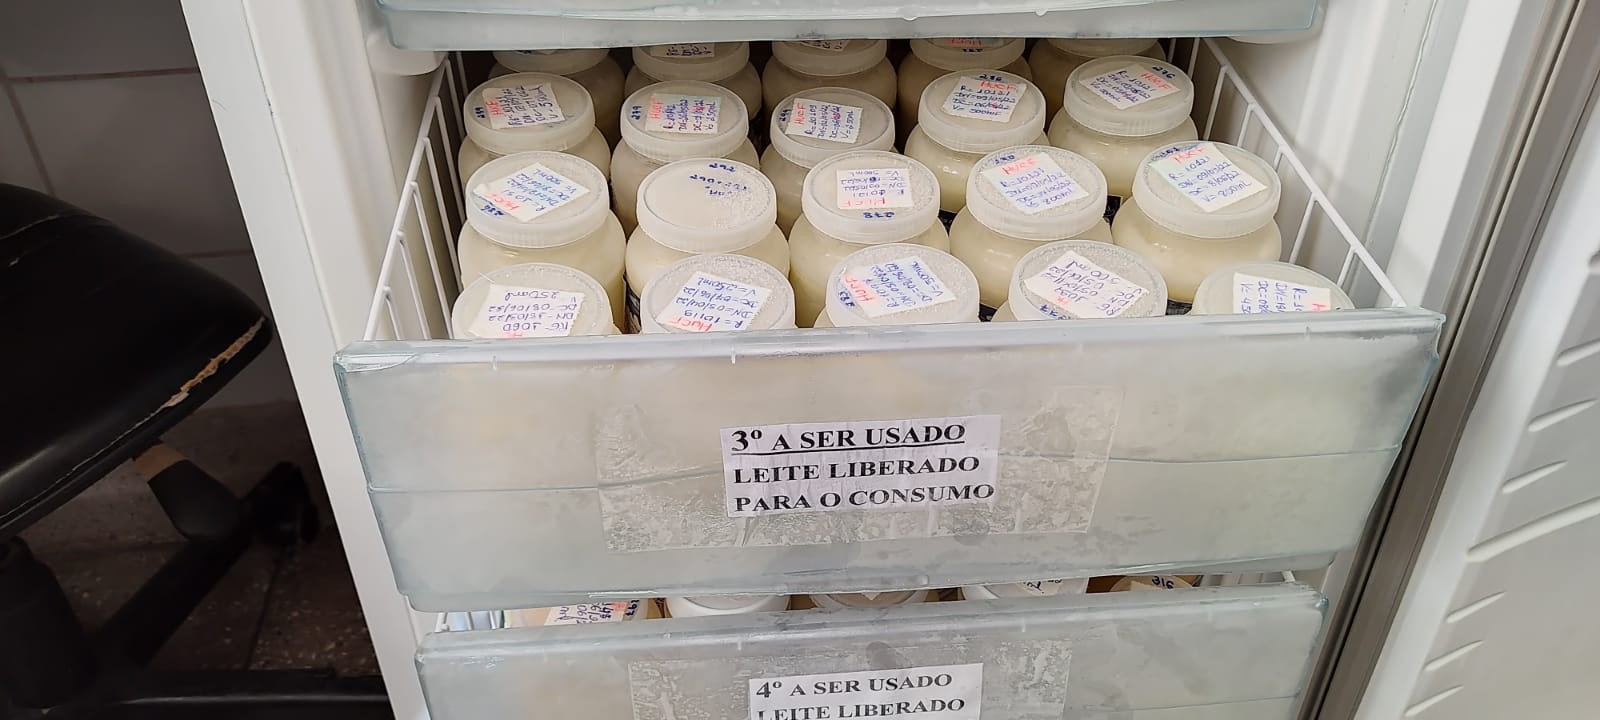 Posto de Coleta do HU, em Montes Claros, está precisando de freezer para armazenar leite doado